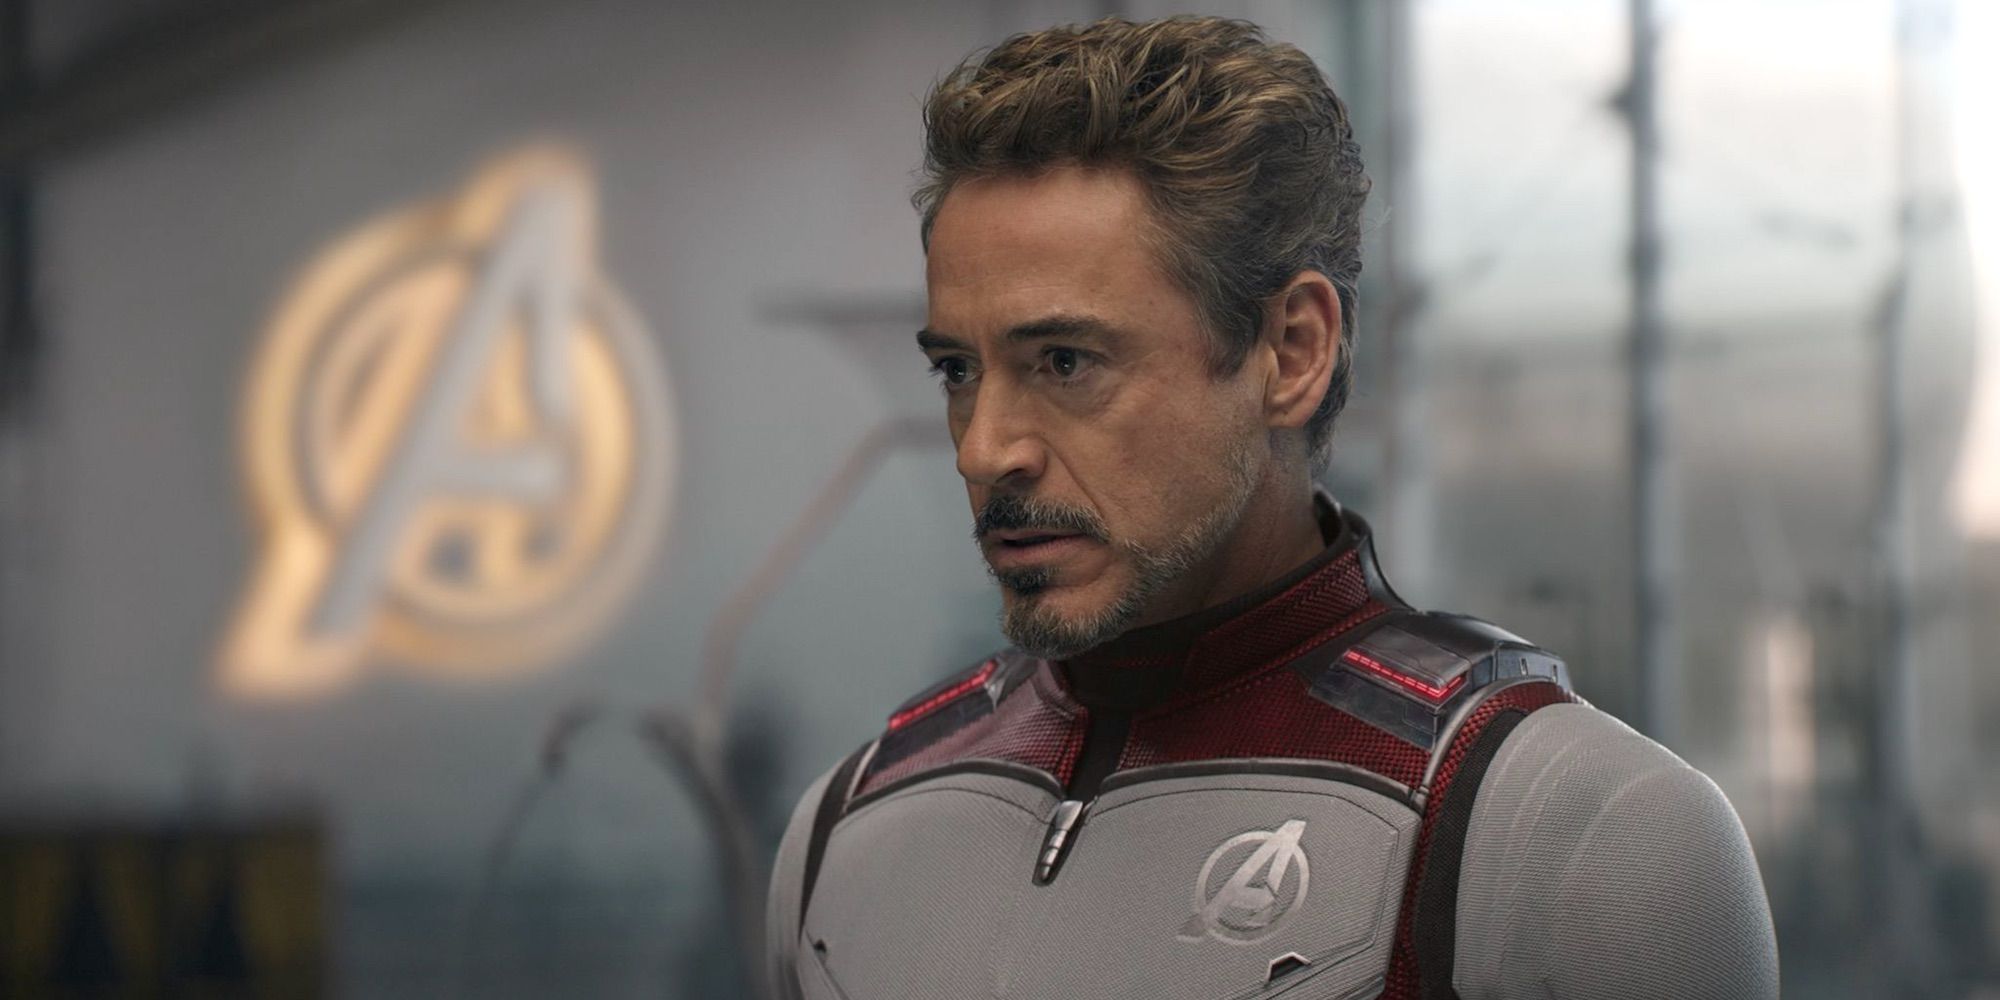 Iron Man prepares to time travel in Avengers: Endgame